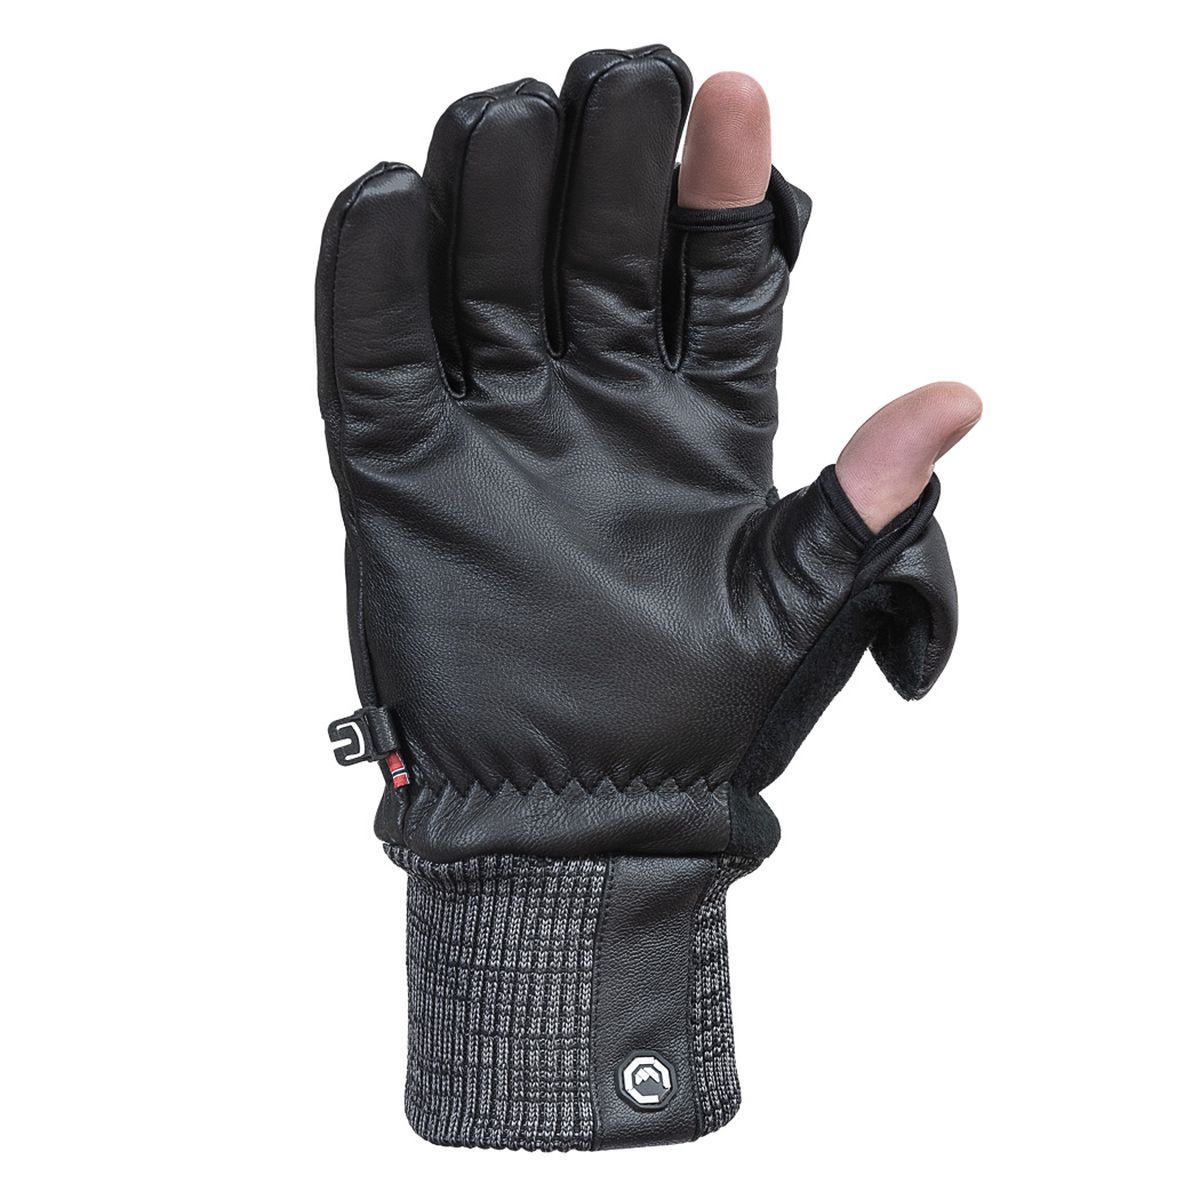 Vallerret Hatchet Leather Glove Black, Leder-Fotohandschuhe M Schwarz